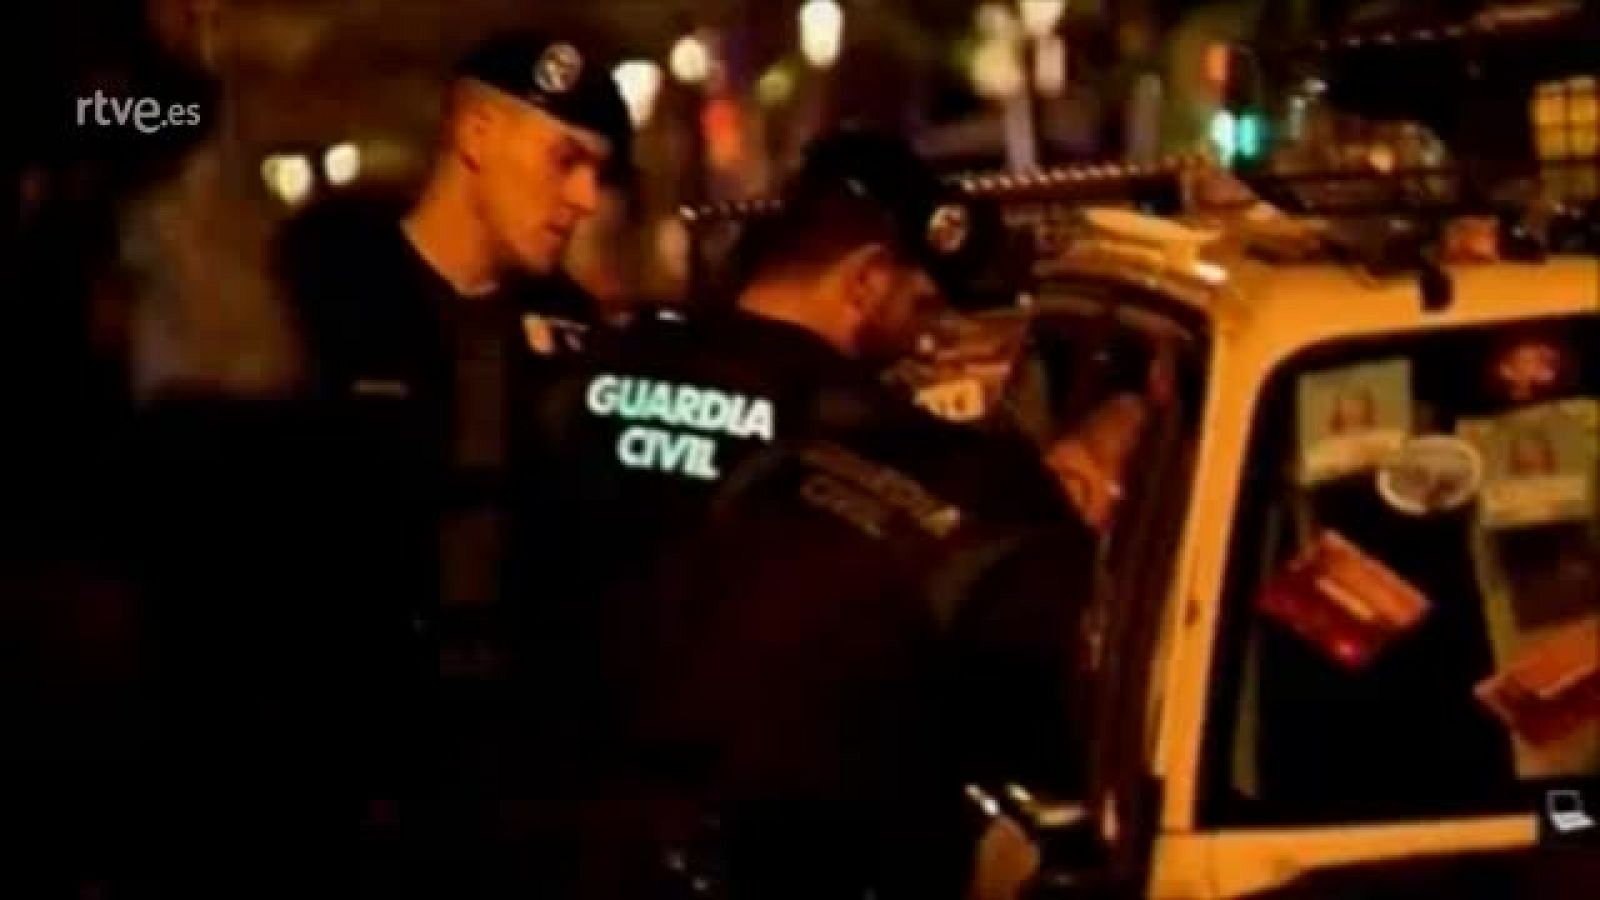 Juicio procés: La Guardia Civil comprueba los daños mientras les gritan "esta noche os vais sin coches" en estos vídeos de la Fiscalía